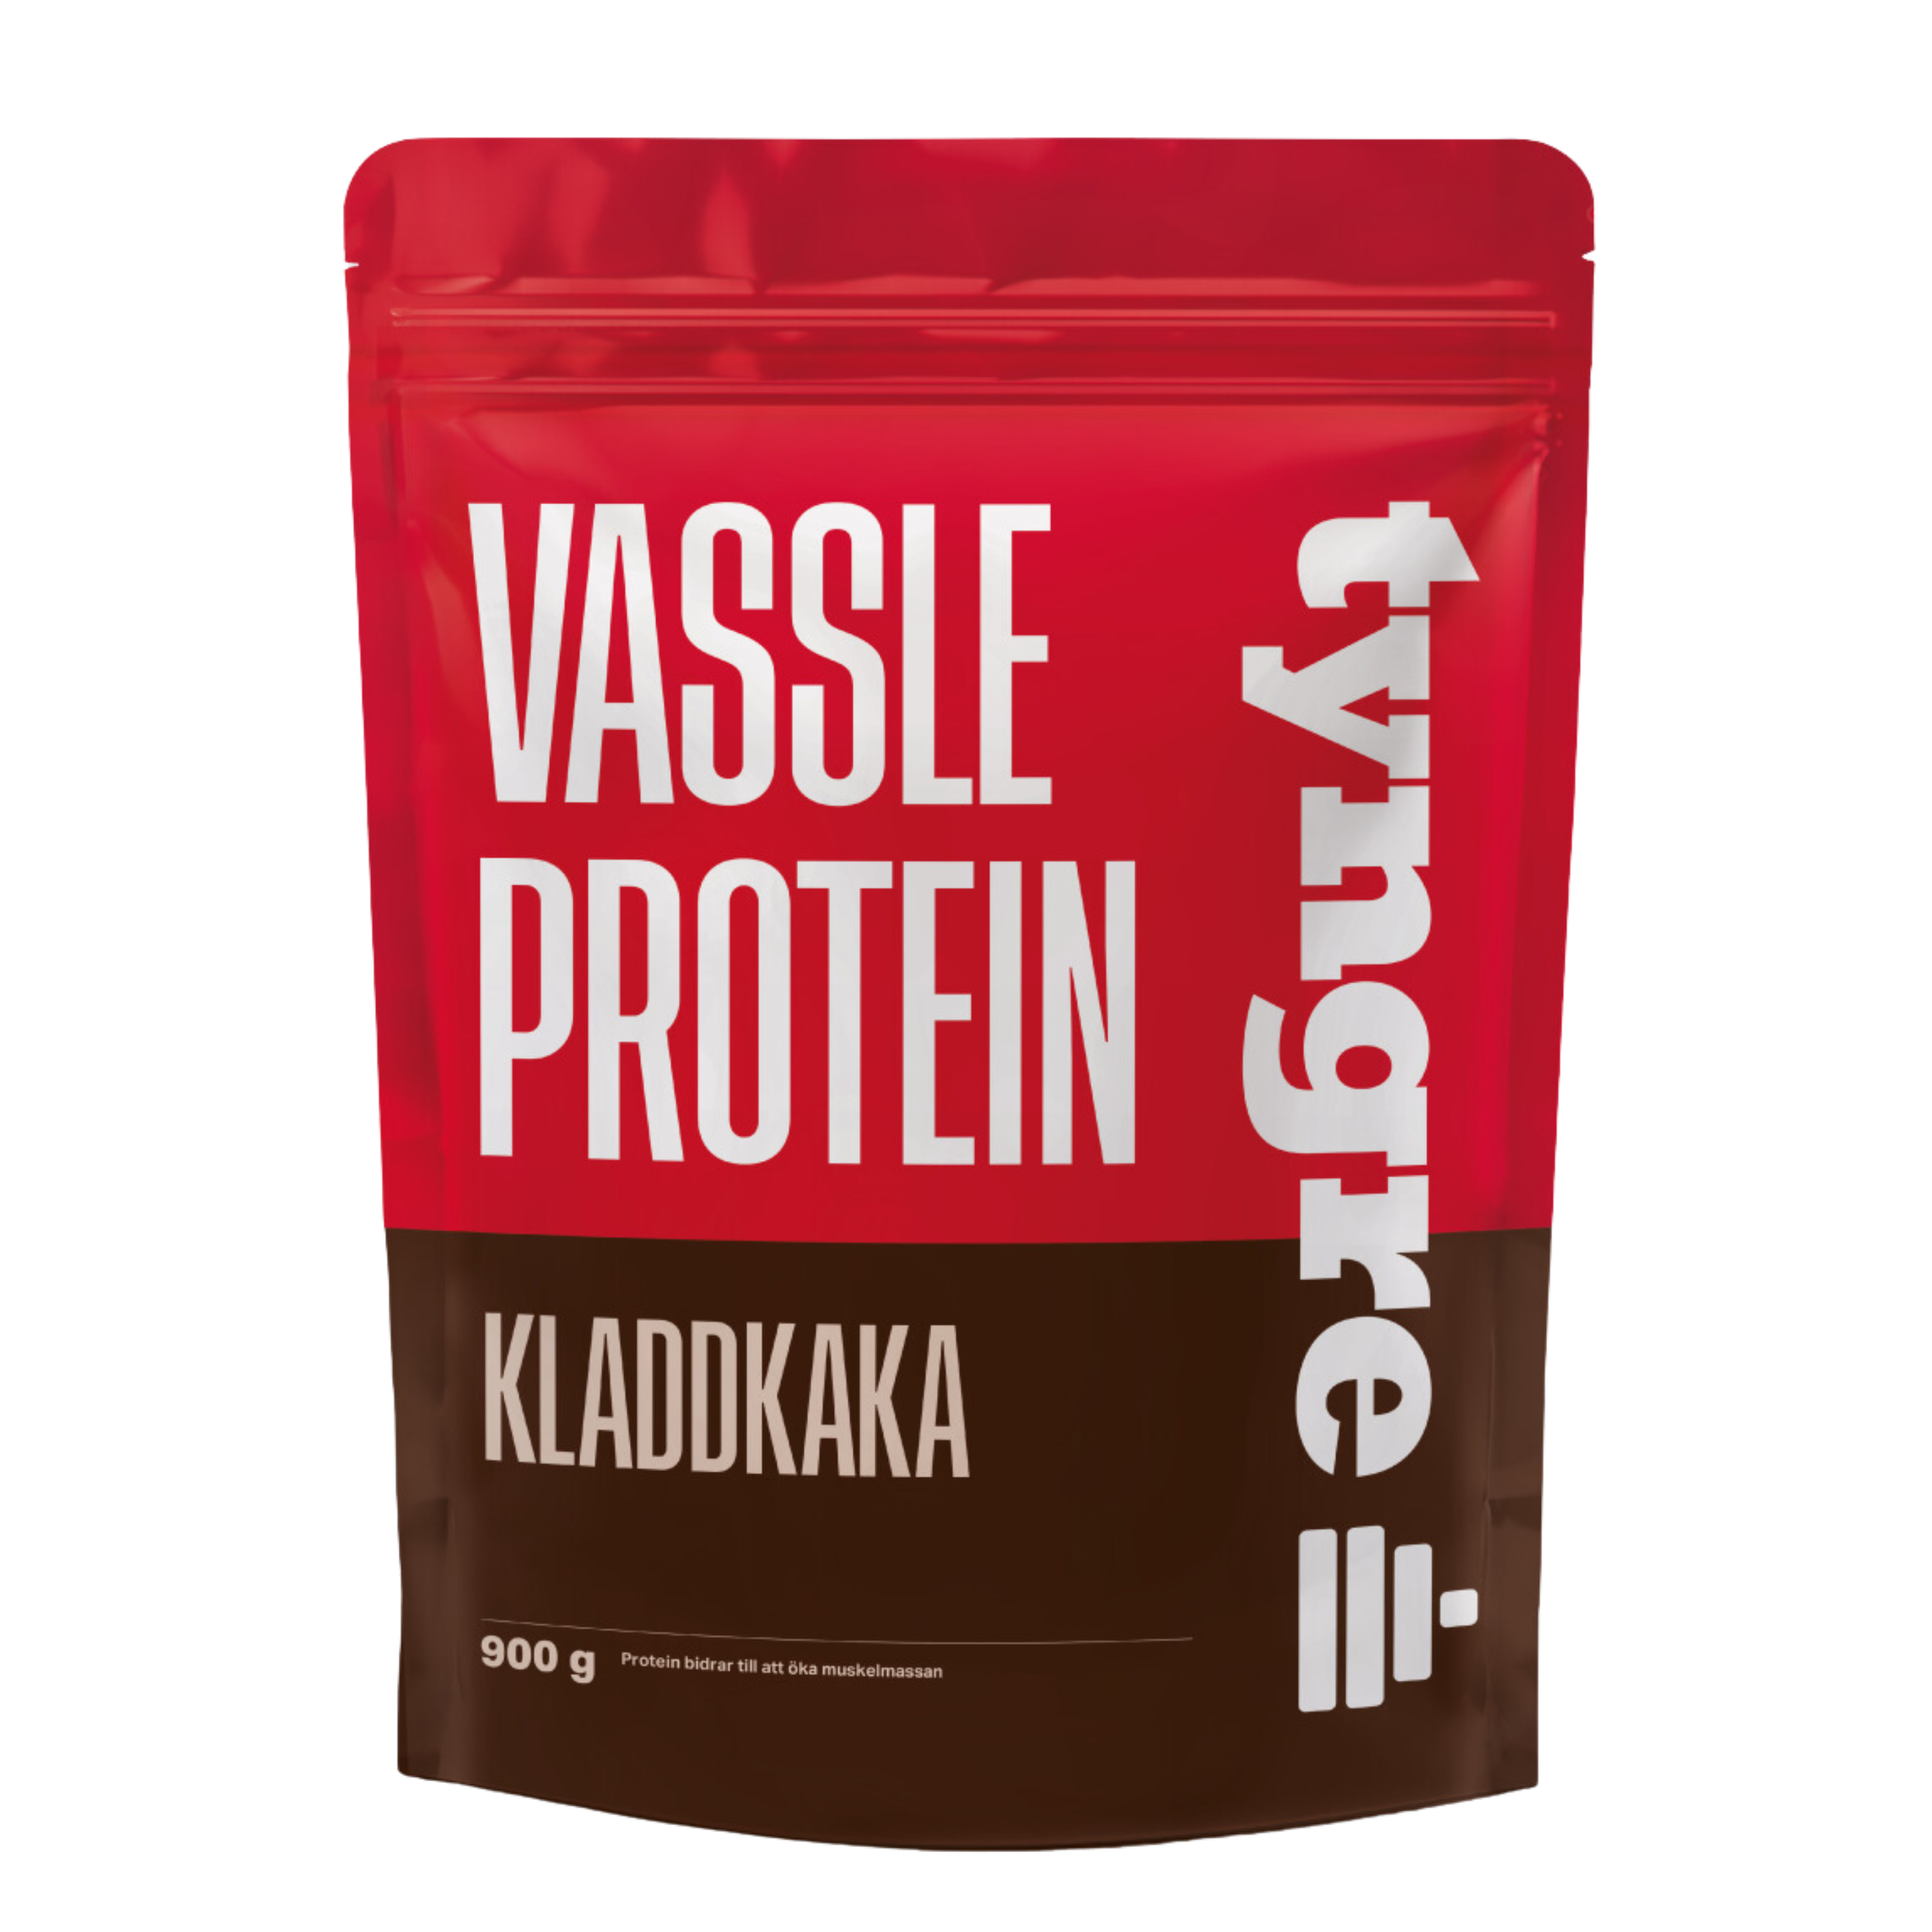 Vassleprotein Kladdkaka 900g